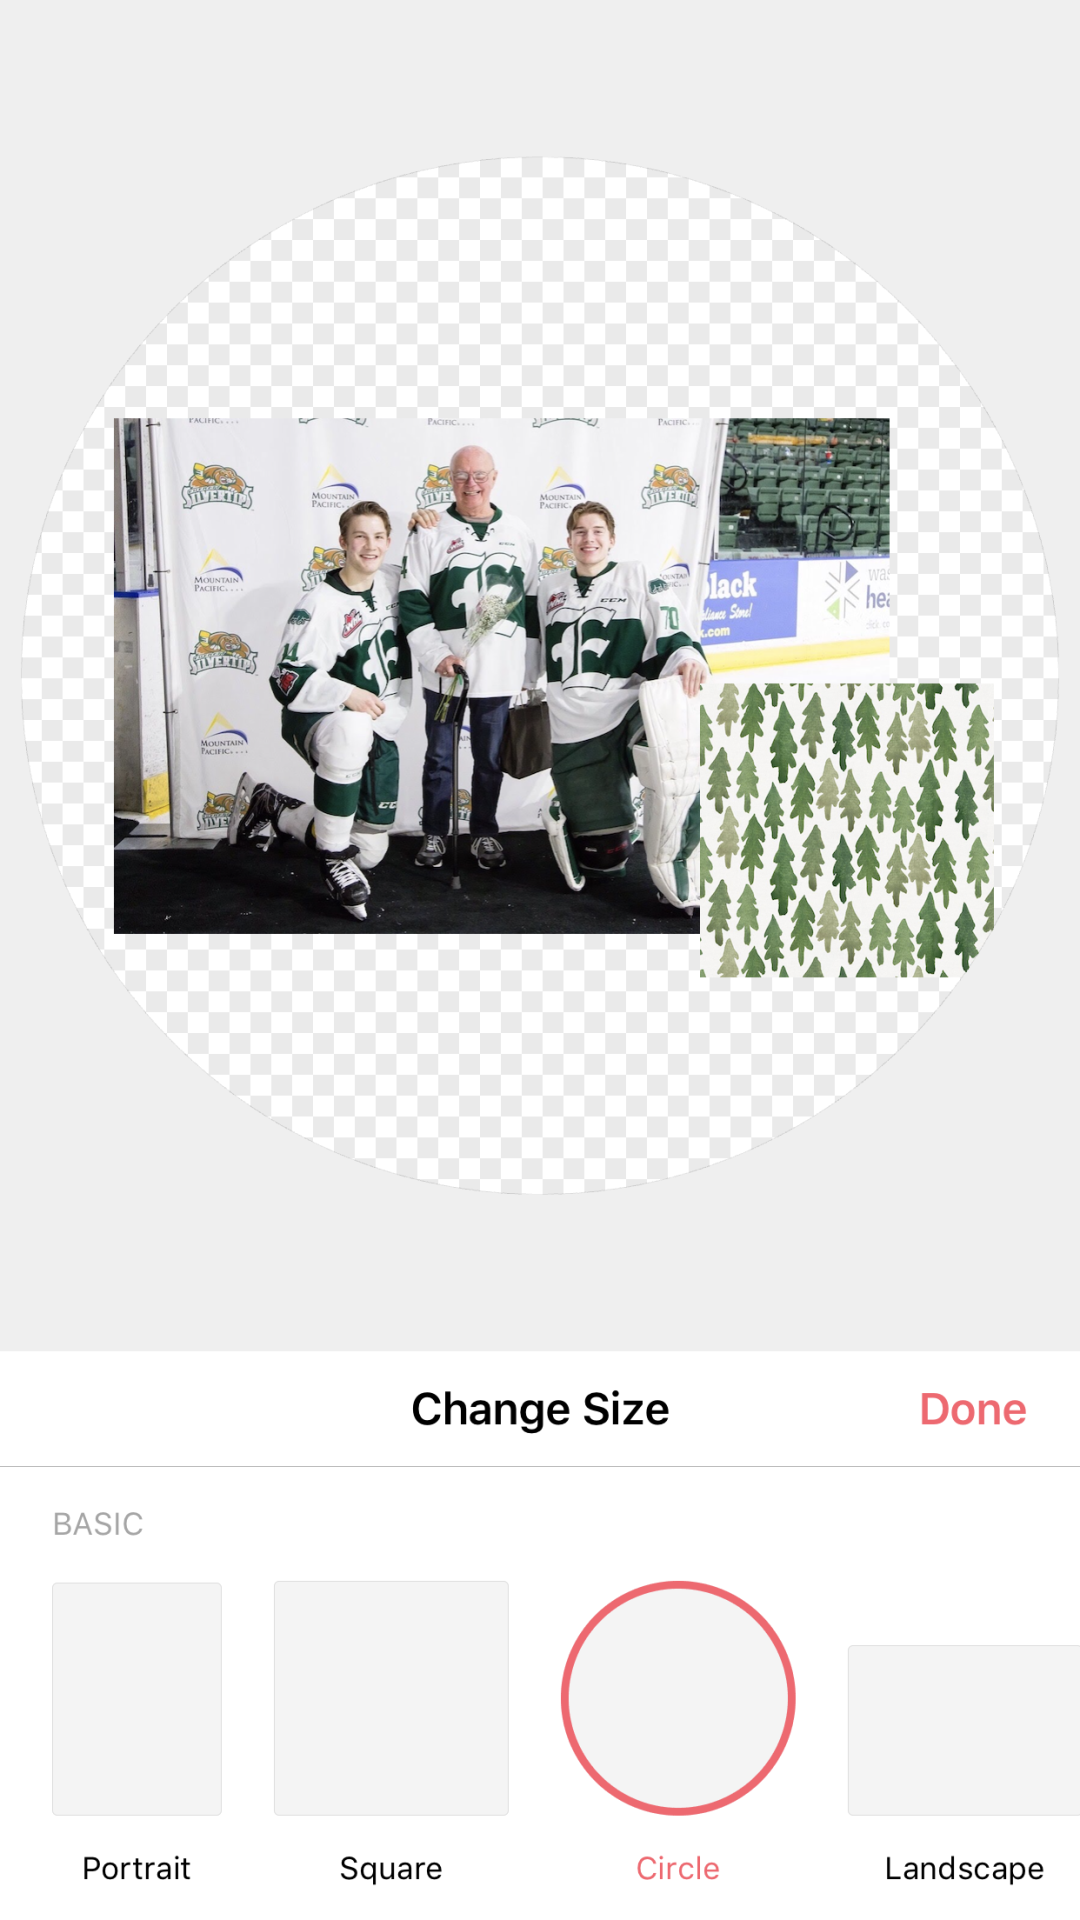 Dallas Stars (NHL) iPhone 6/7/8 Lock Screen Wallpaper